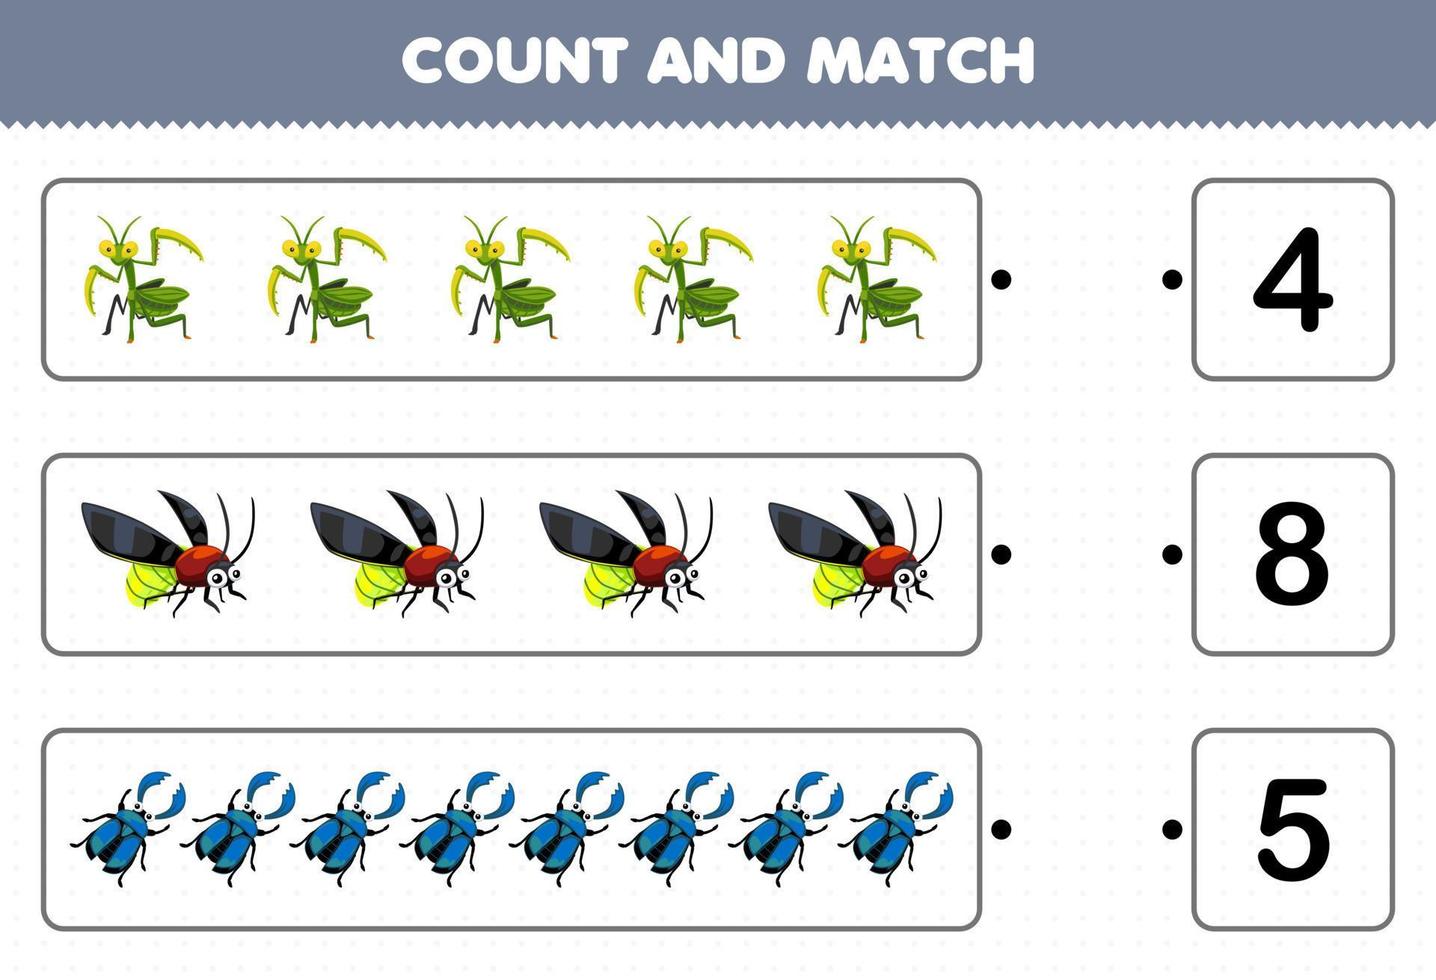 juego educativo para niños cuente el número de escarabajo de luciérnaga mantis de dibujos animados lindo y haga coincidir con los números correctos hoja de trabajo de error imprimible vector